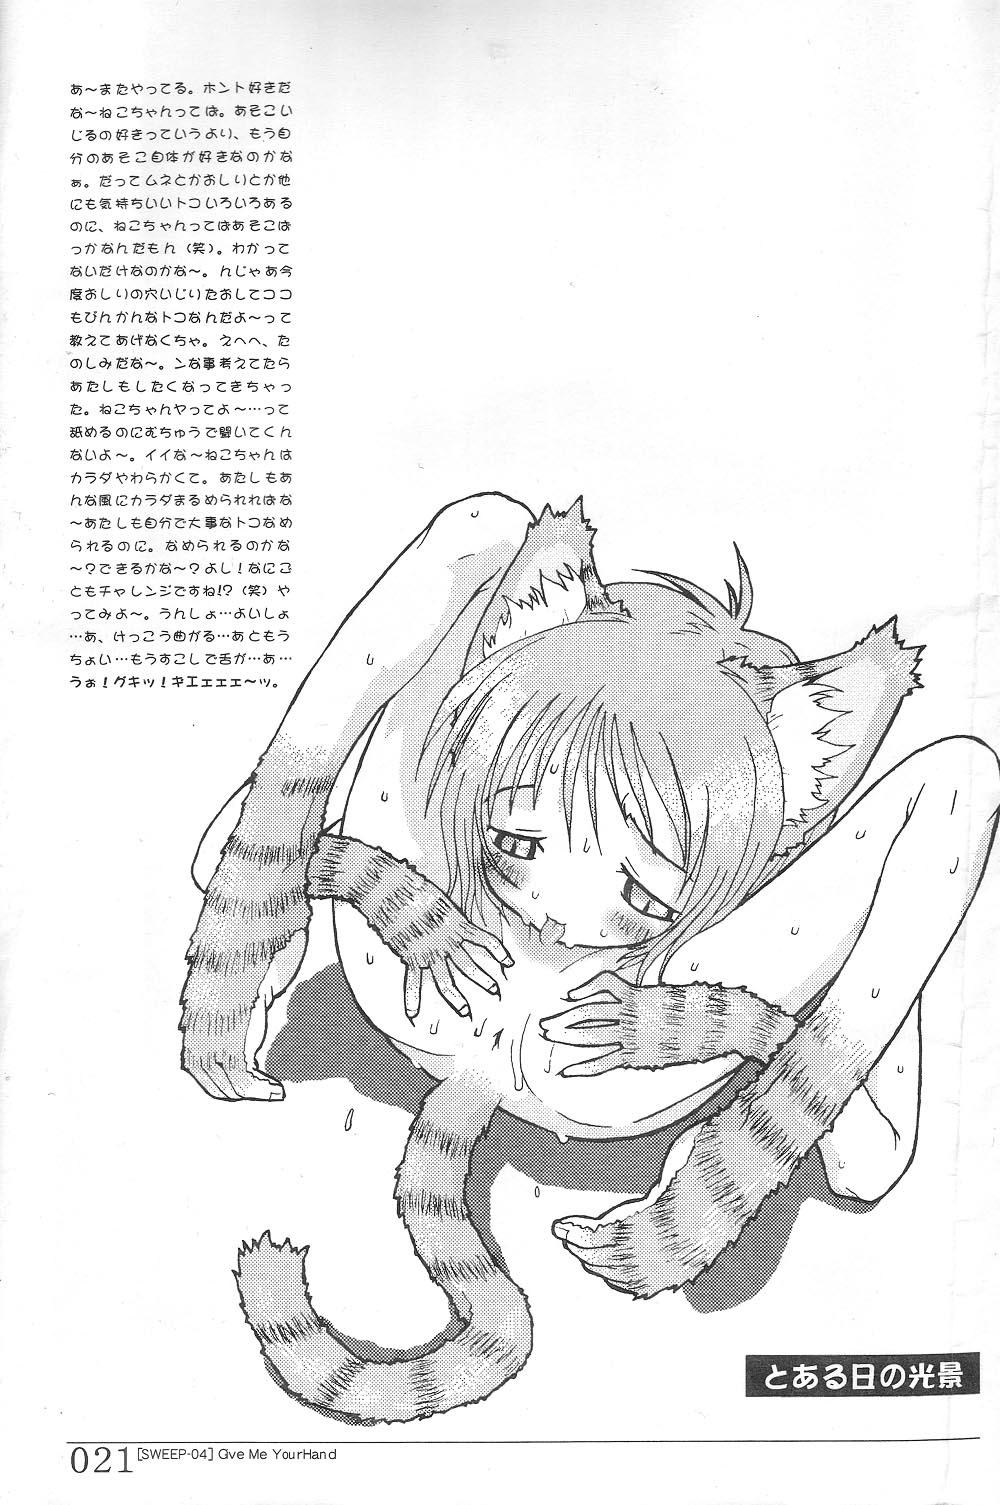 Stepsis SWEEP-04 Give Me Your Hand - Cardcaptor sakura Ojamajo doremi Doggystyle Porn - Page 21